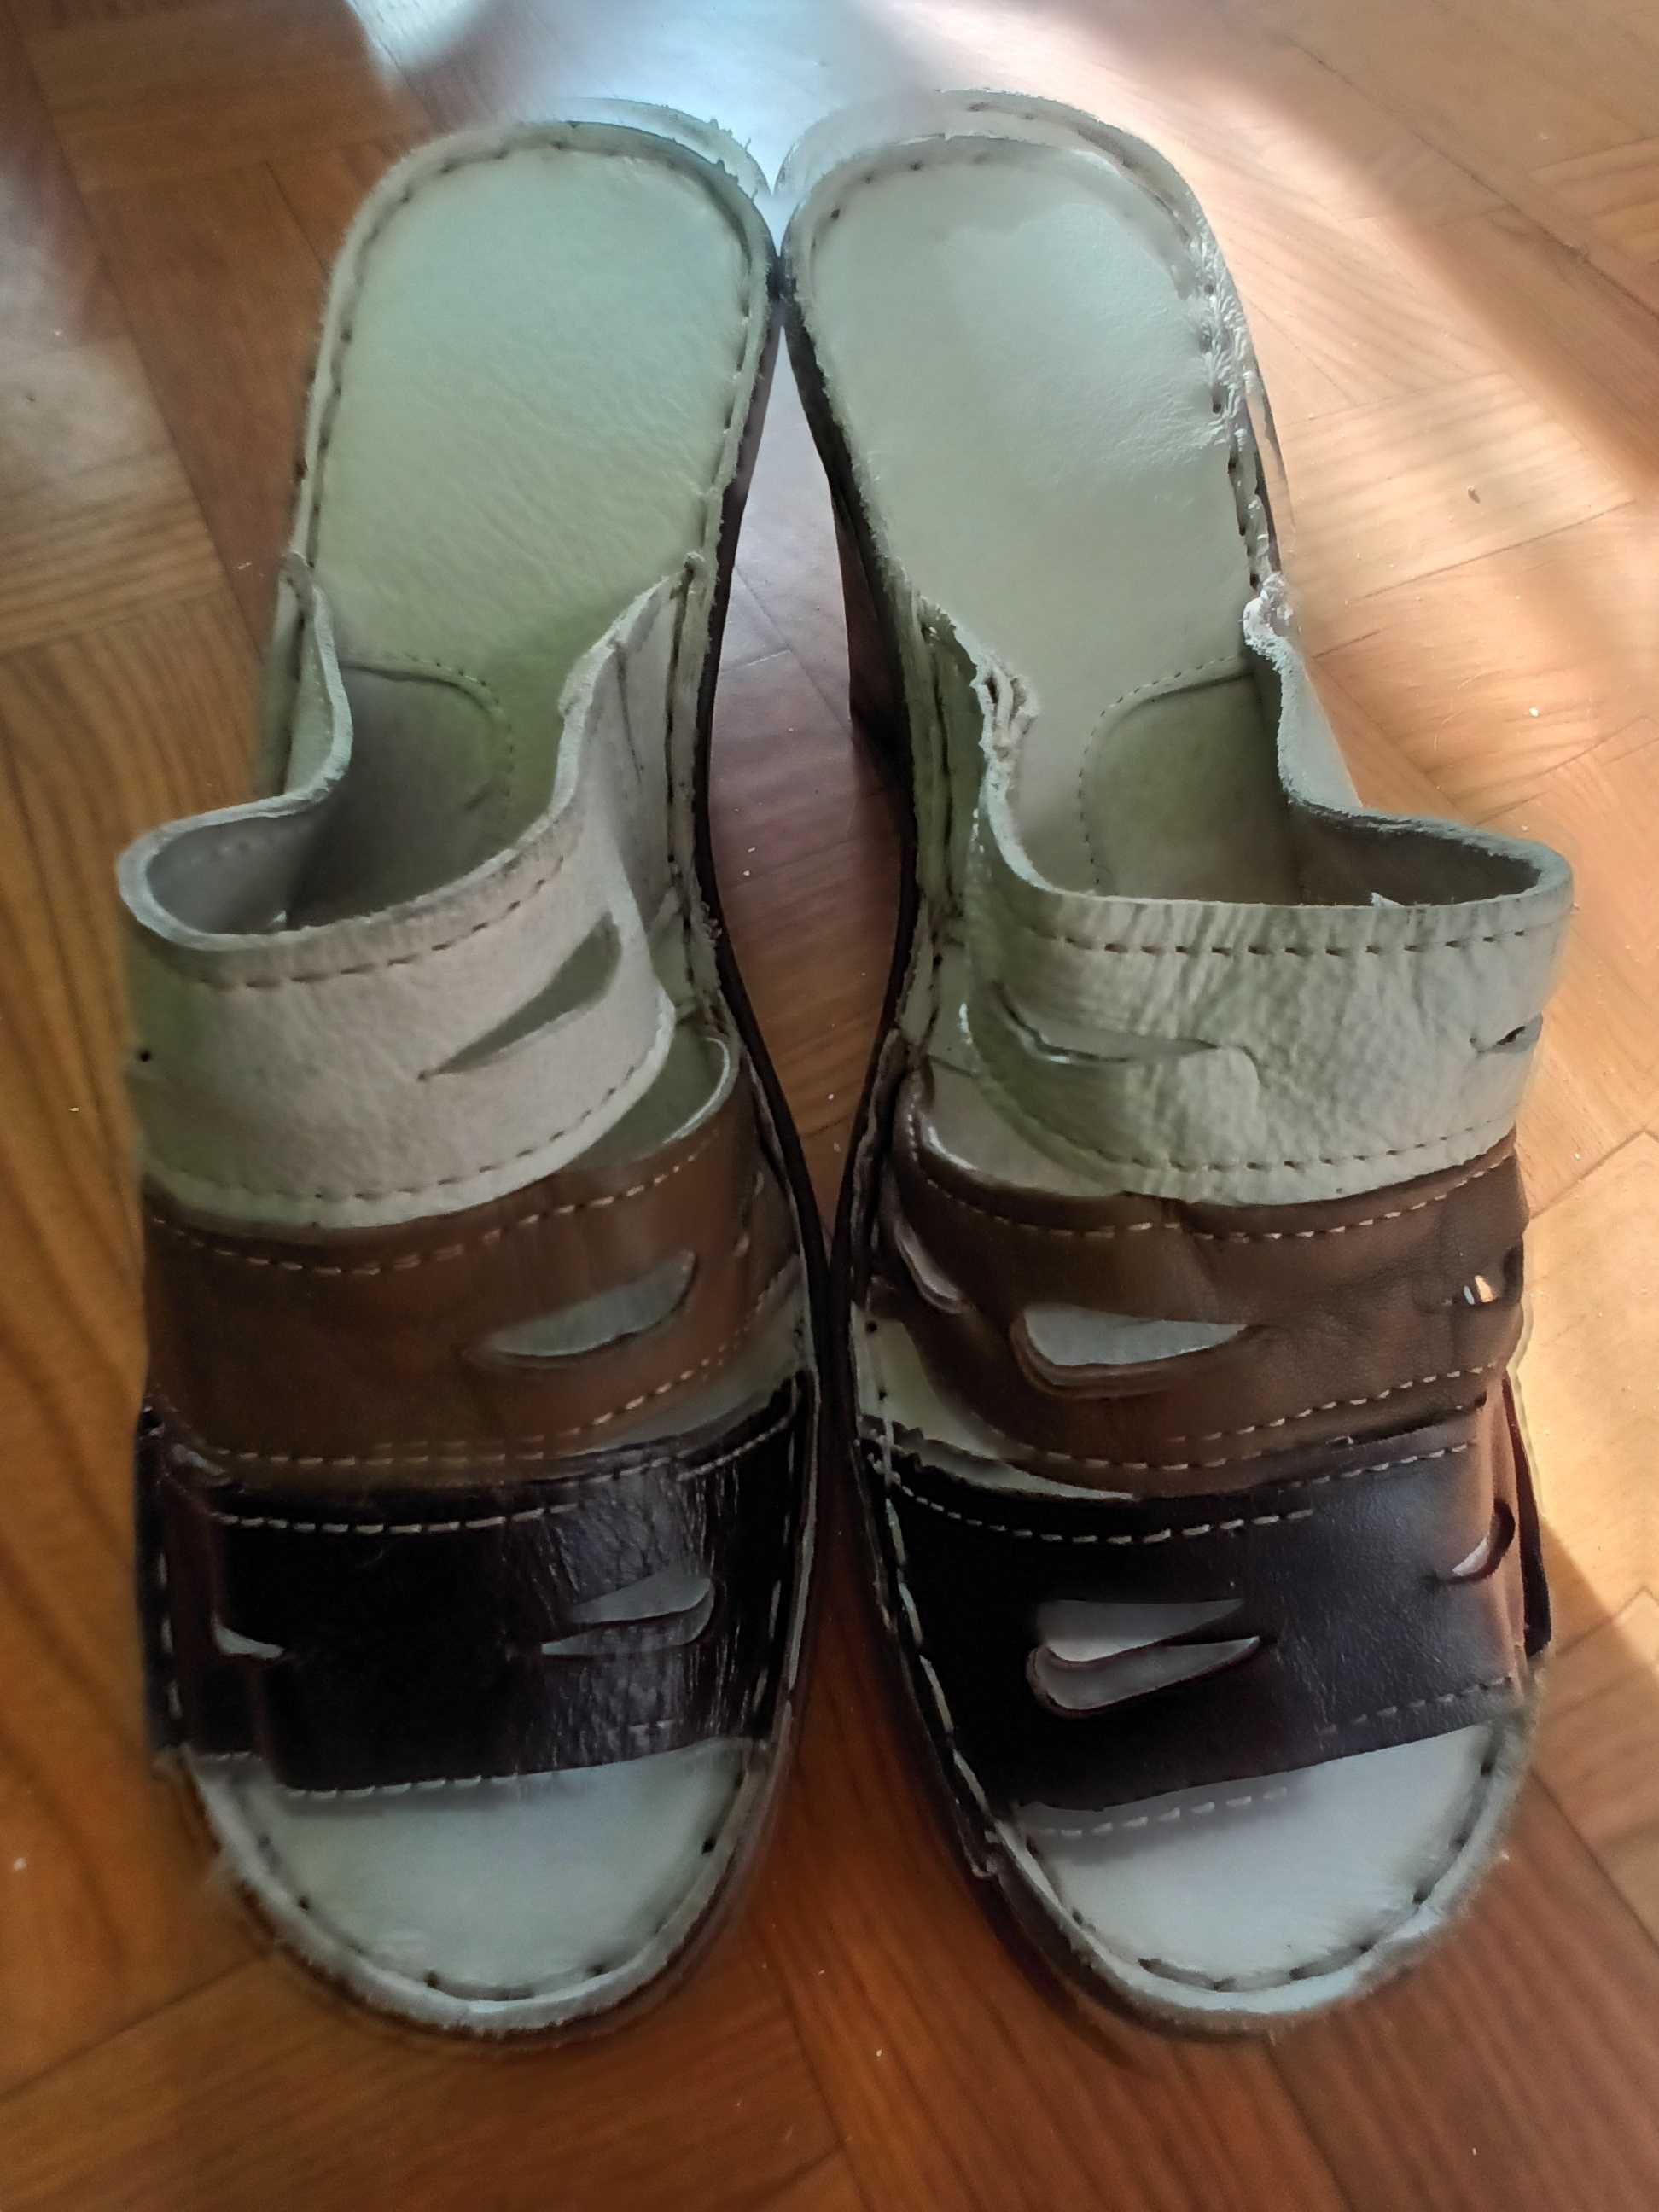 Wyprzedaż-nowe nieużywane buty klapki na koturnie-roz.38-BARDZO TANIO